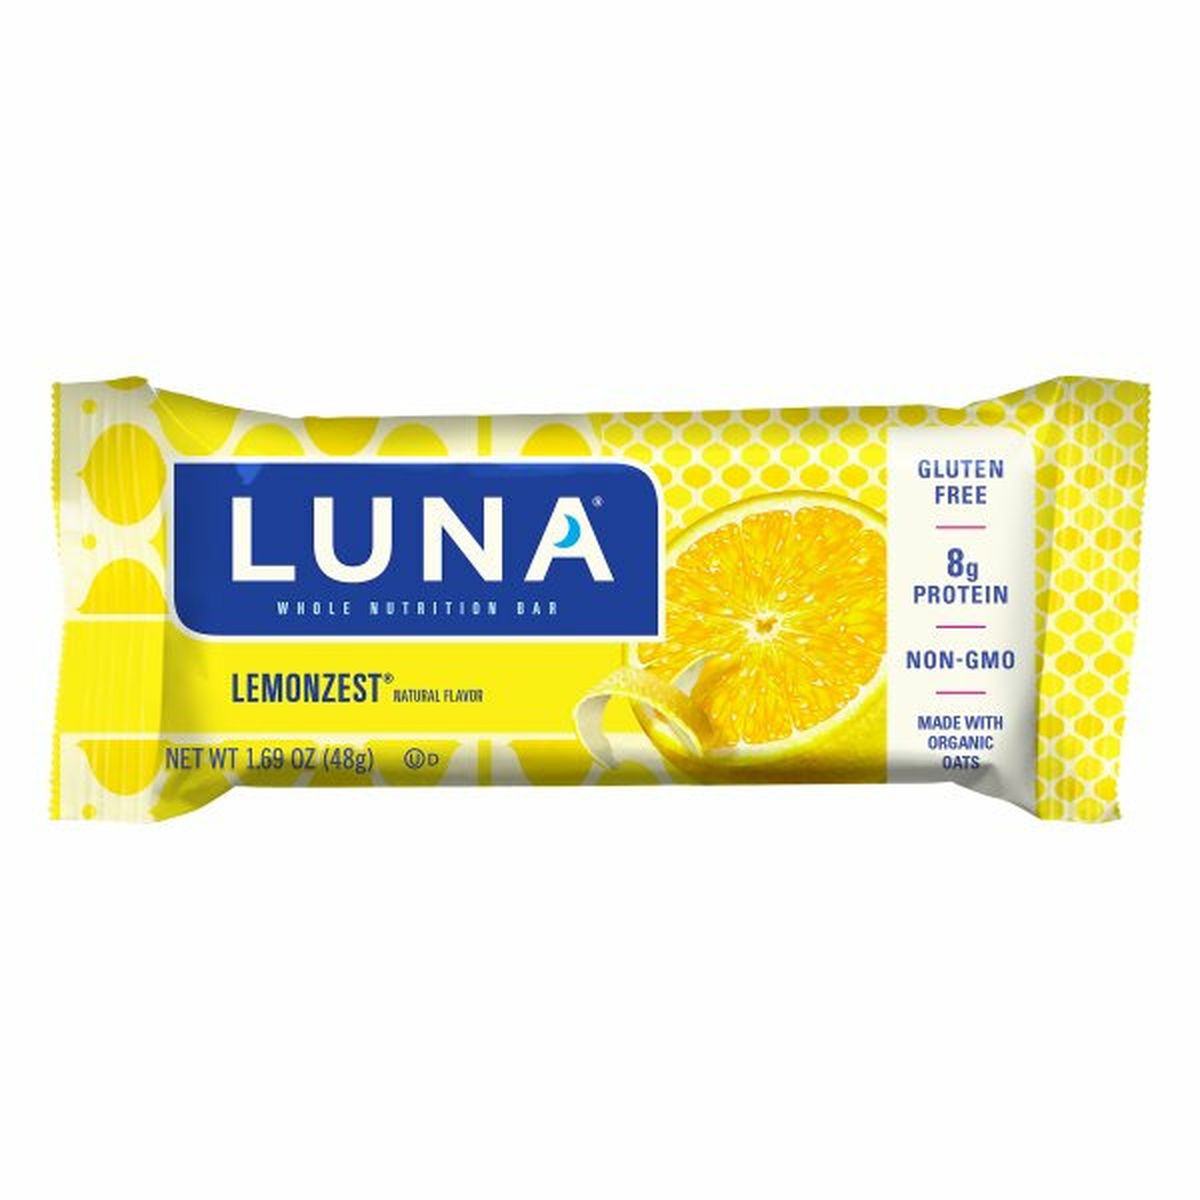 Calories in Luna Nutrition Bar, Whole, Lemonzest